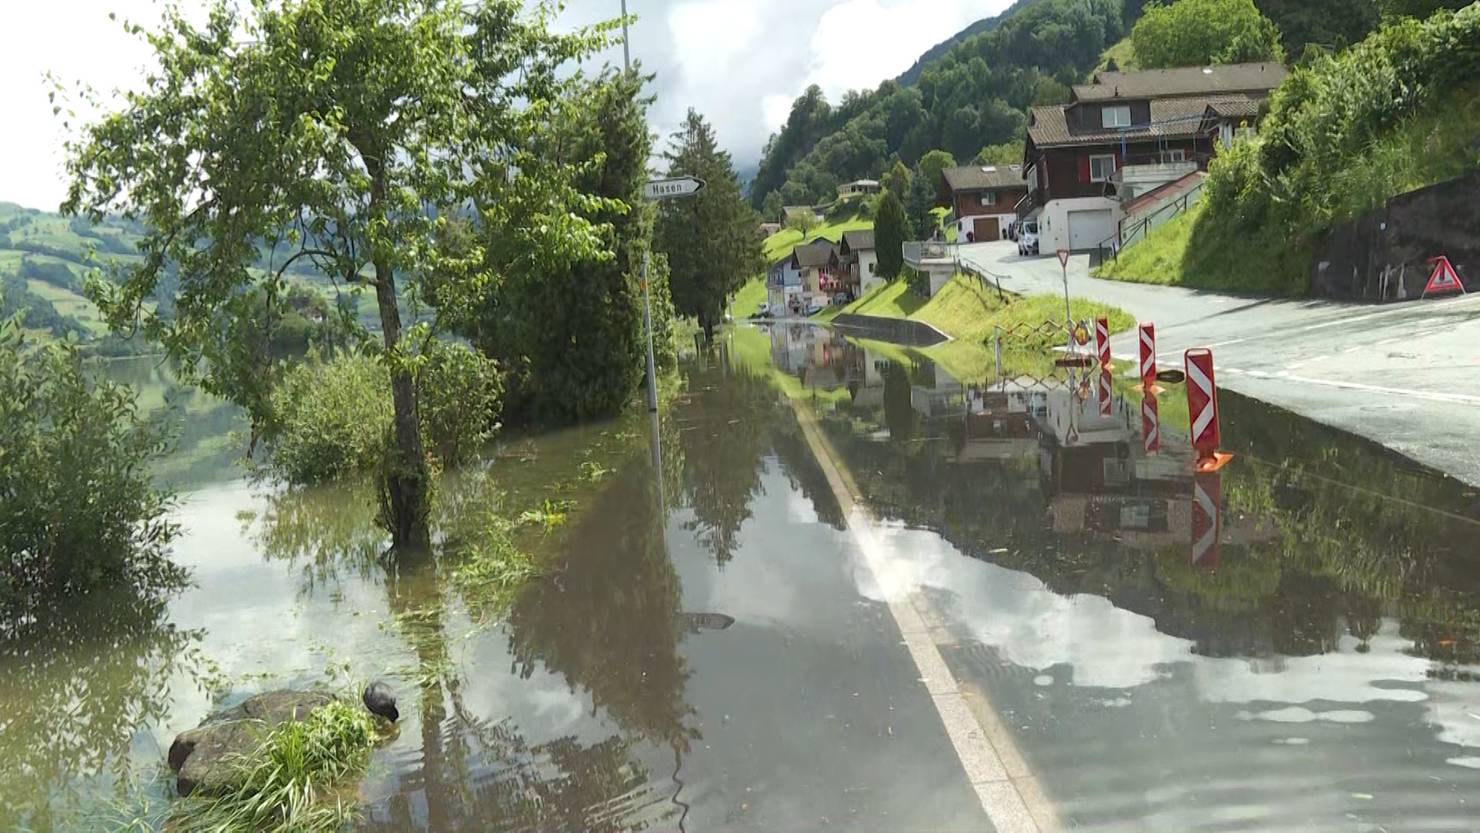 Sondersendung Zur Hochwasser Lage In Der Schweiz Telez Ri